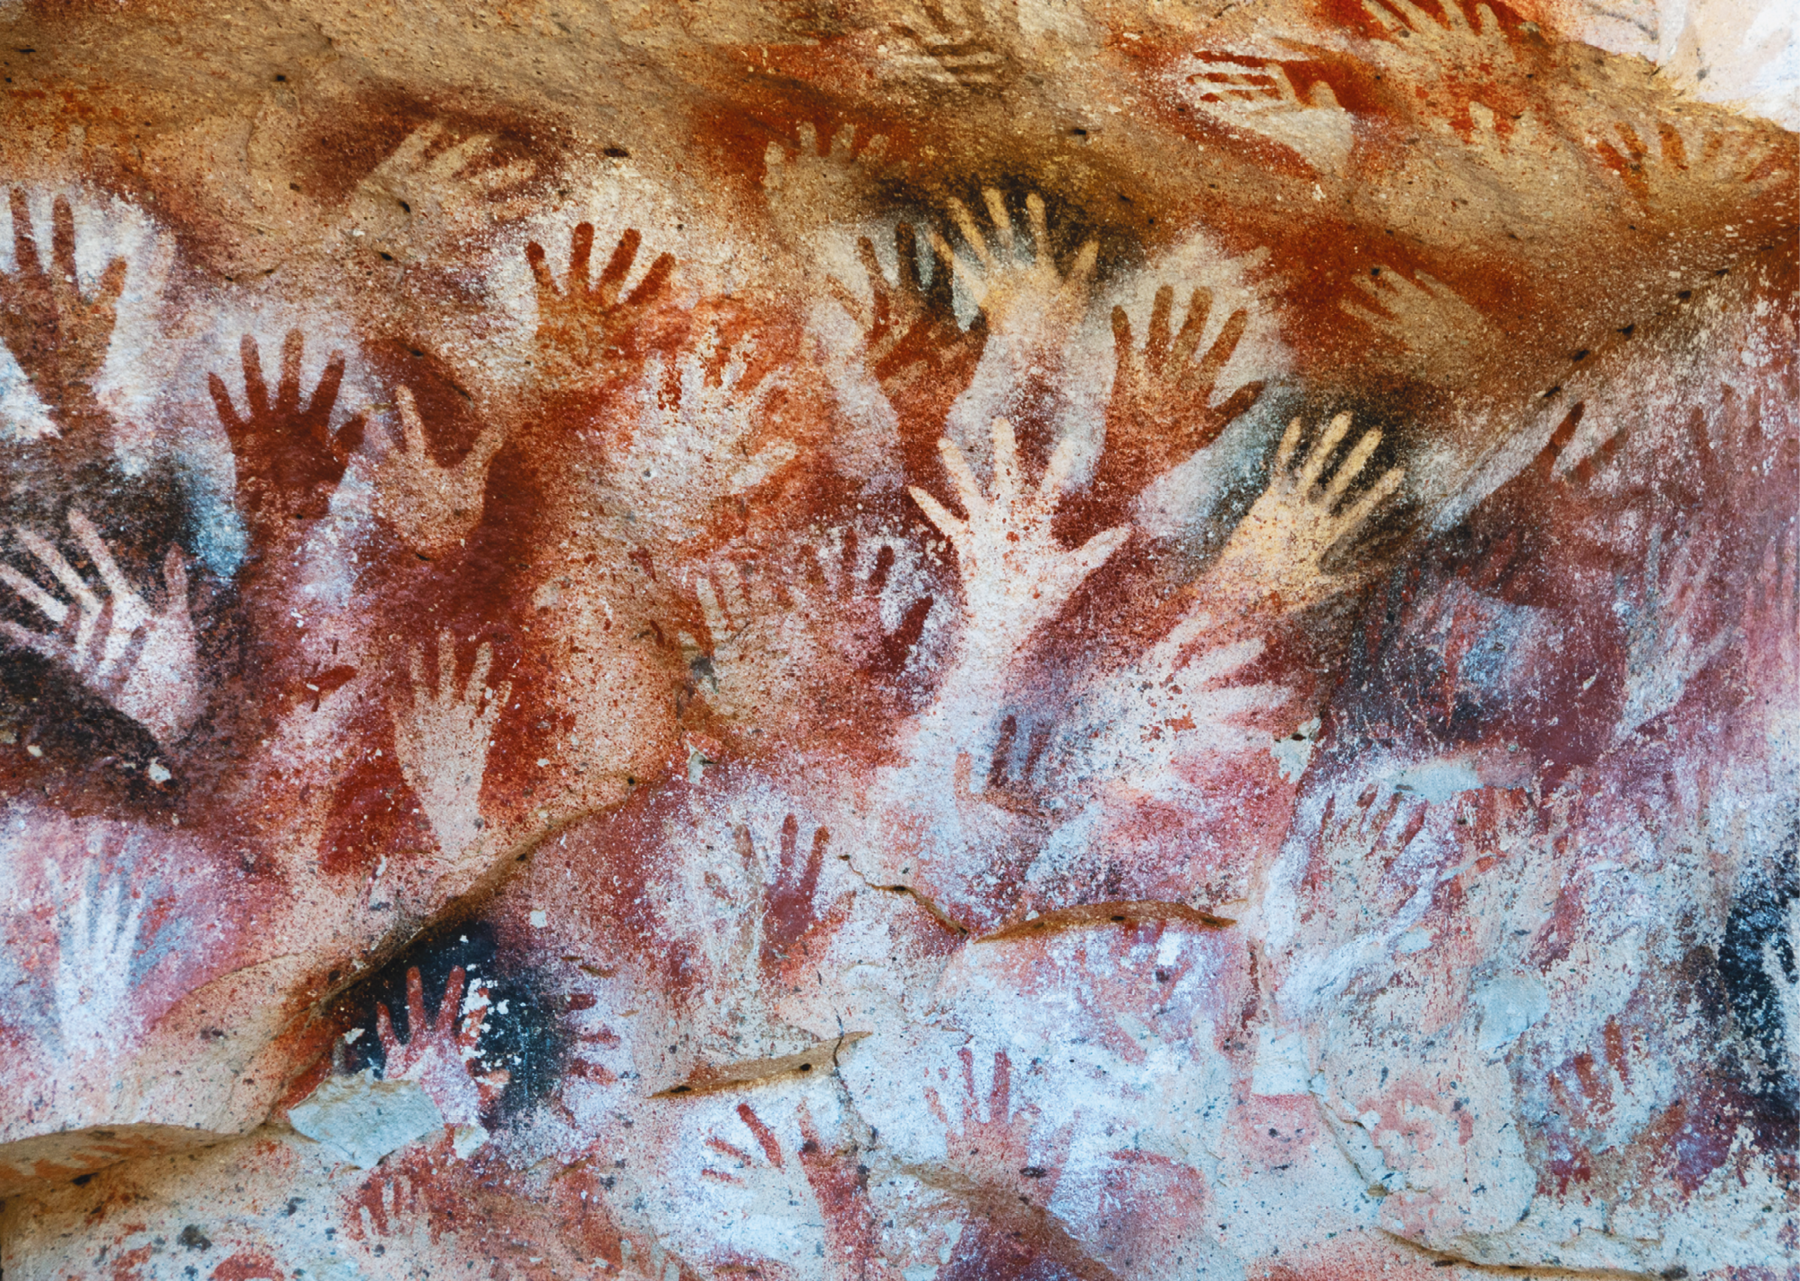 Fotografia. Pintura rupestre. Diversas mãos, algumas claras e outras escuras, impressas em uma rocha.